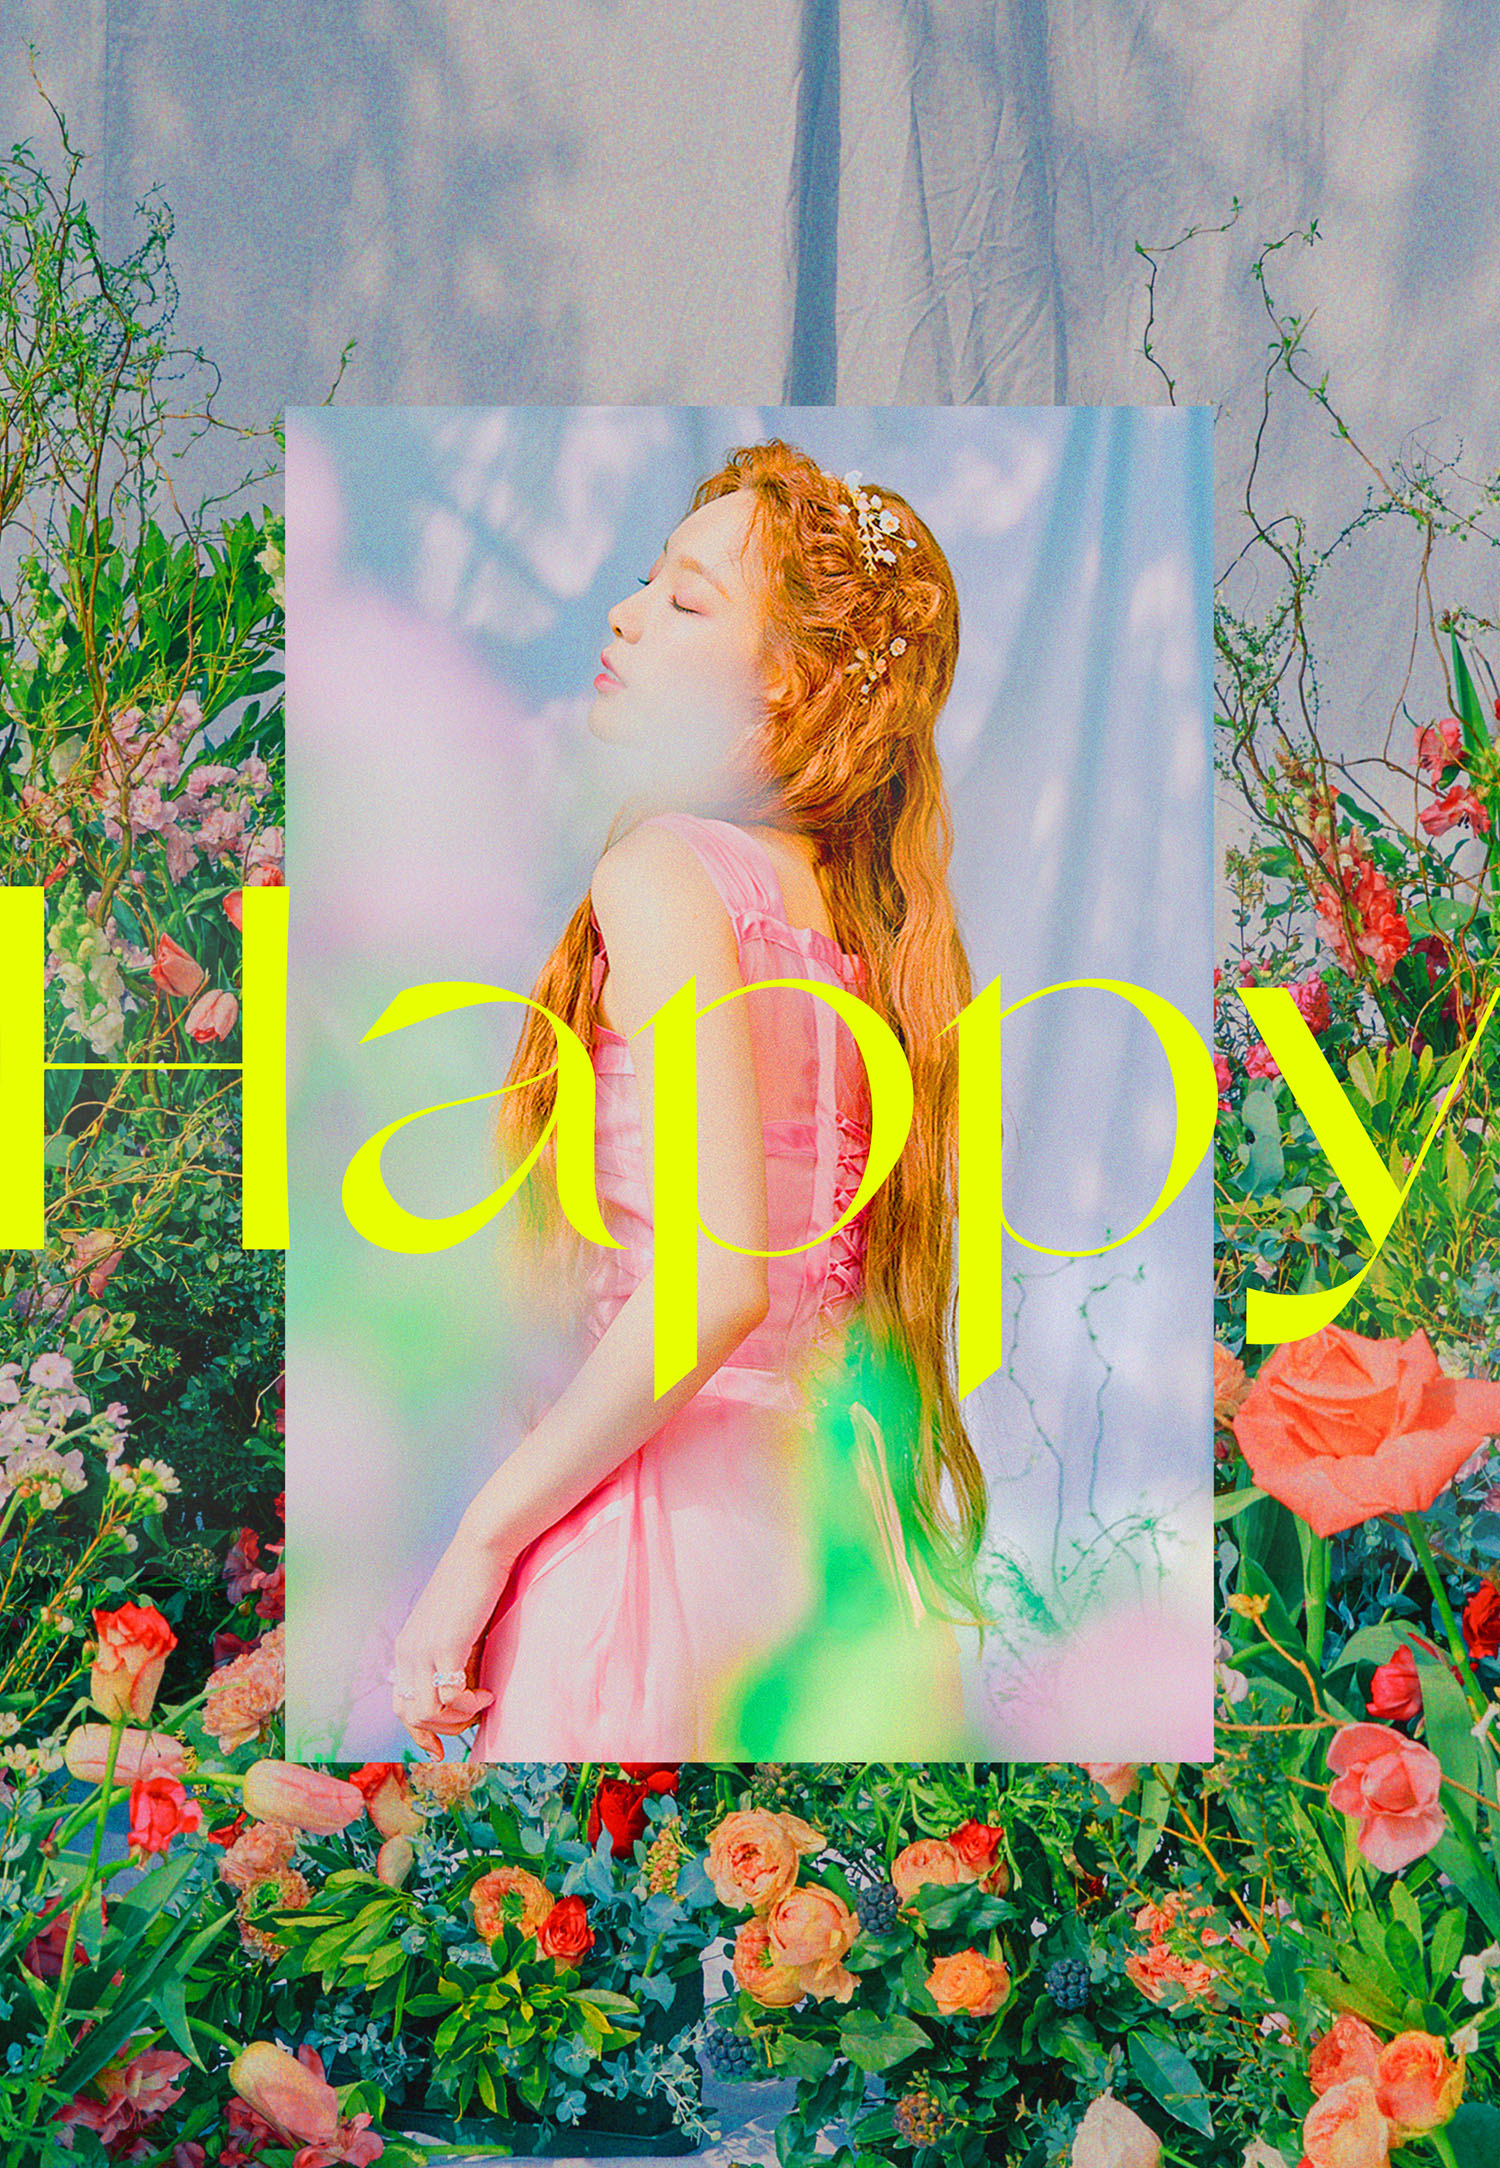 太好听了~太妍公开新曲《Happy》献给歌迷的礼物